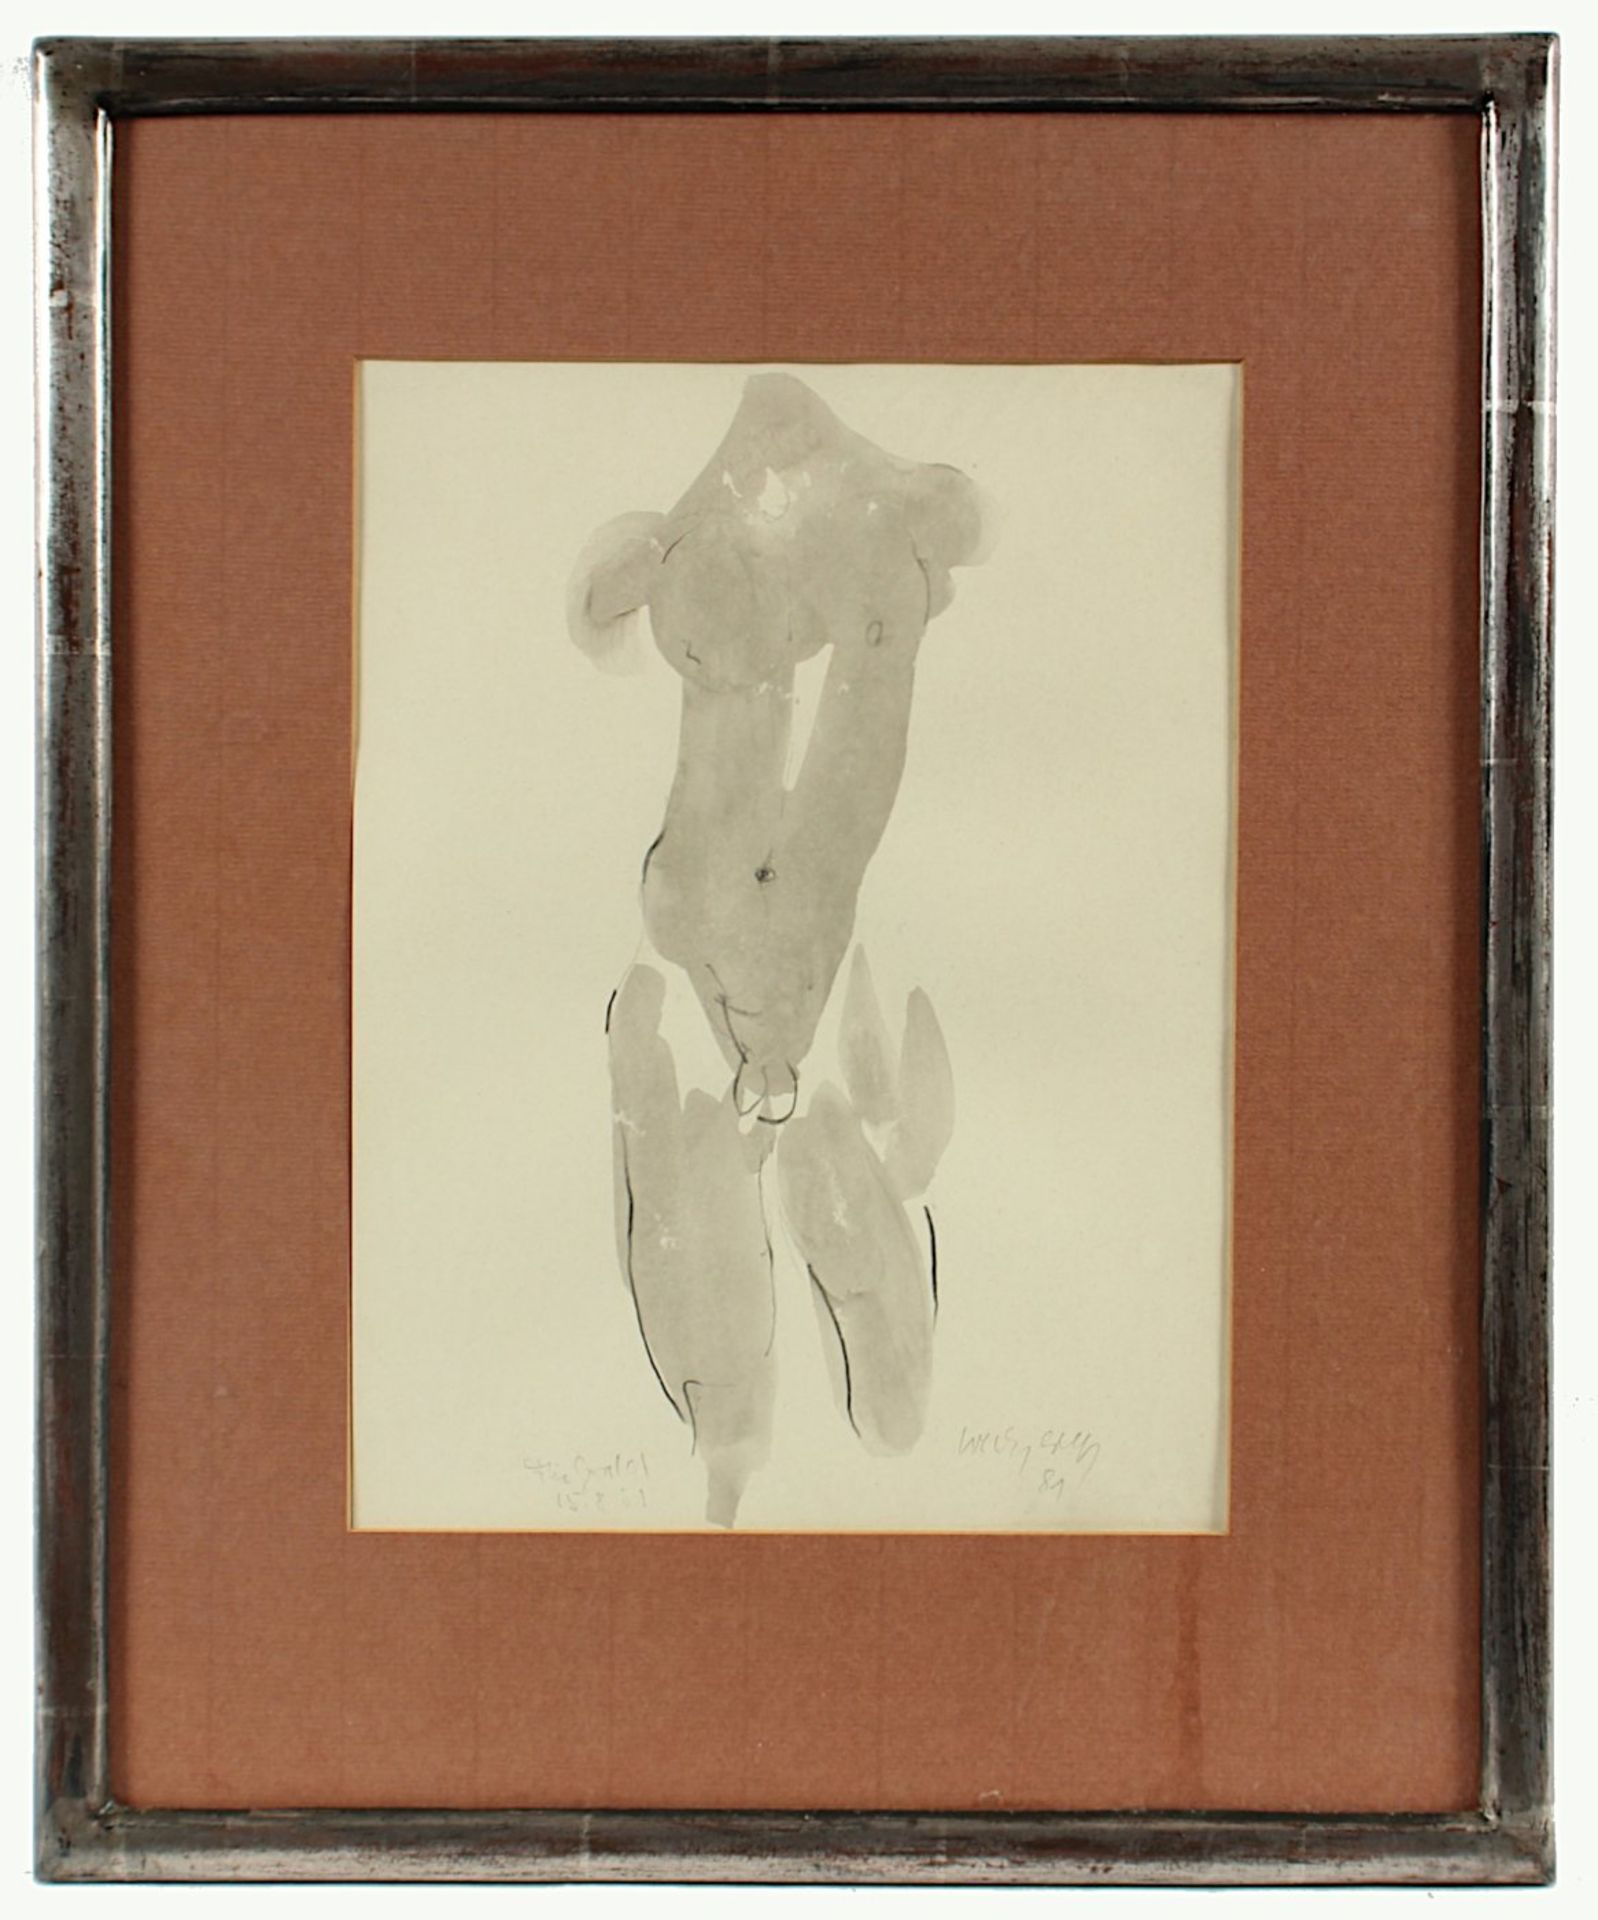 WECZEREK, Thomas, "Männerakt", Kohle, laviert, 32 x 23, handsigniert und datiert '81, Widmung, R. - Image 2 of 4